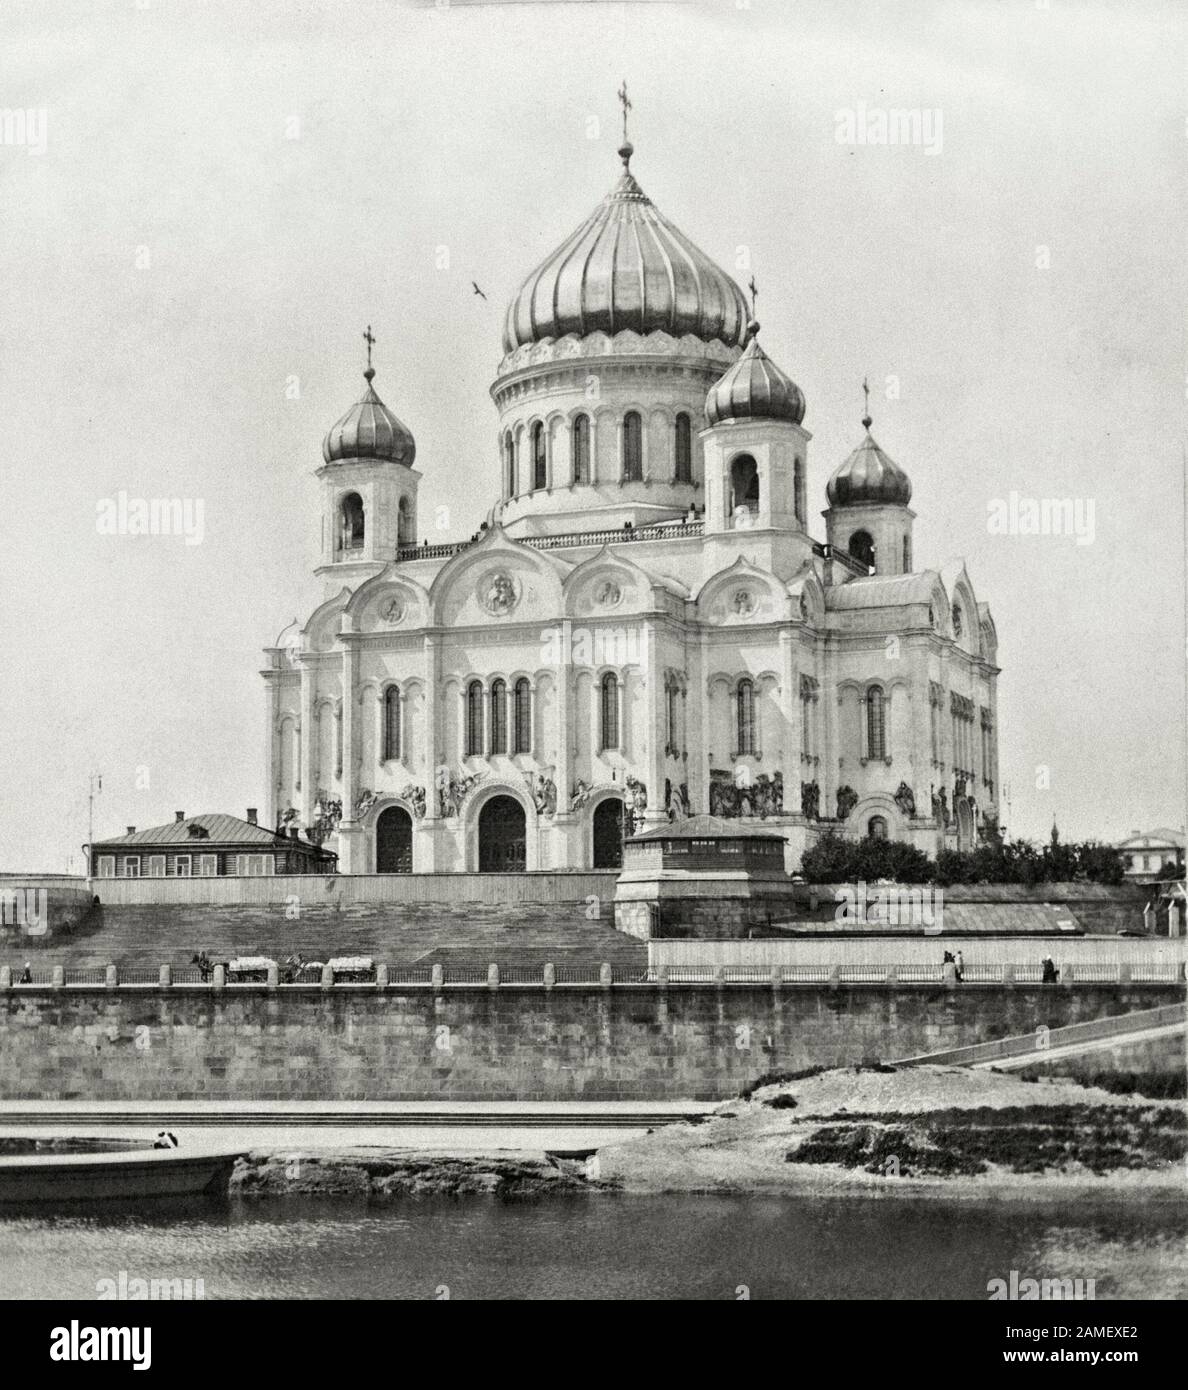 Église De Notre Sauveur, imparfaite dans la splendeur. Moscou, Russie. 1903 Banque D'Images